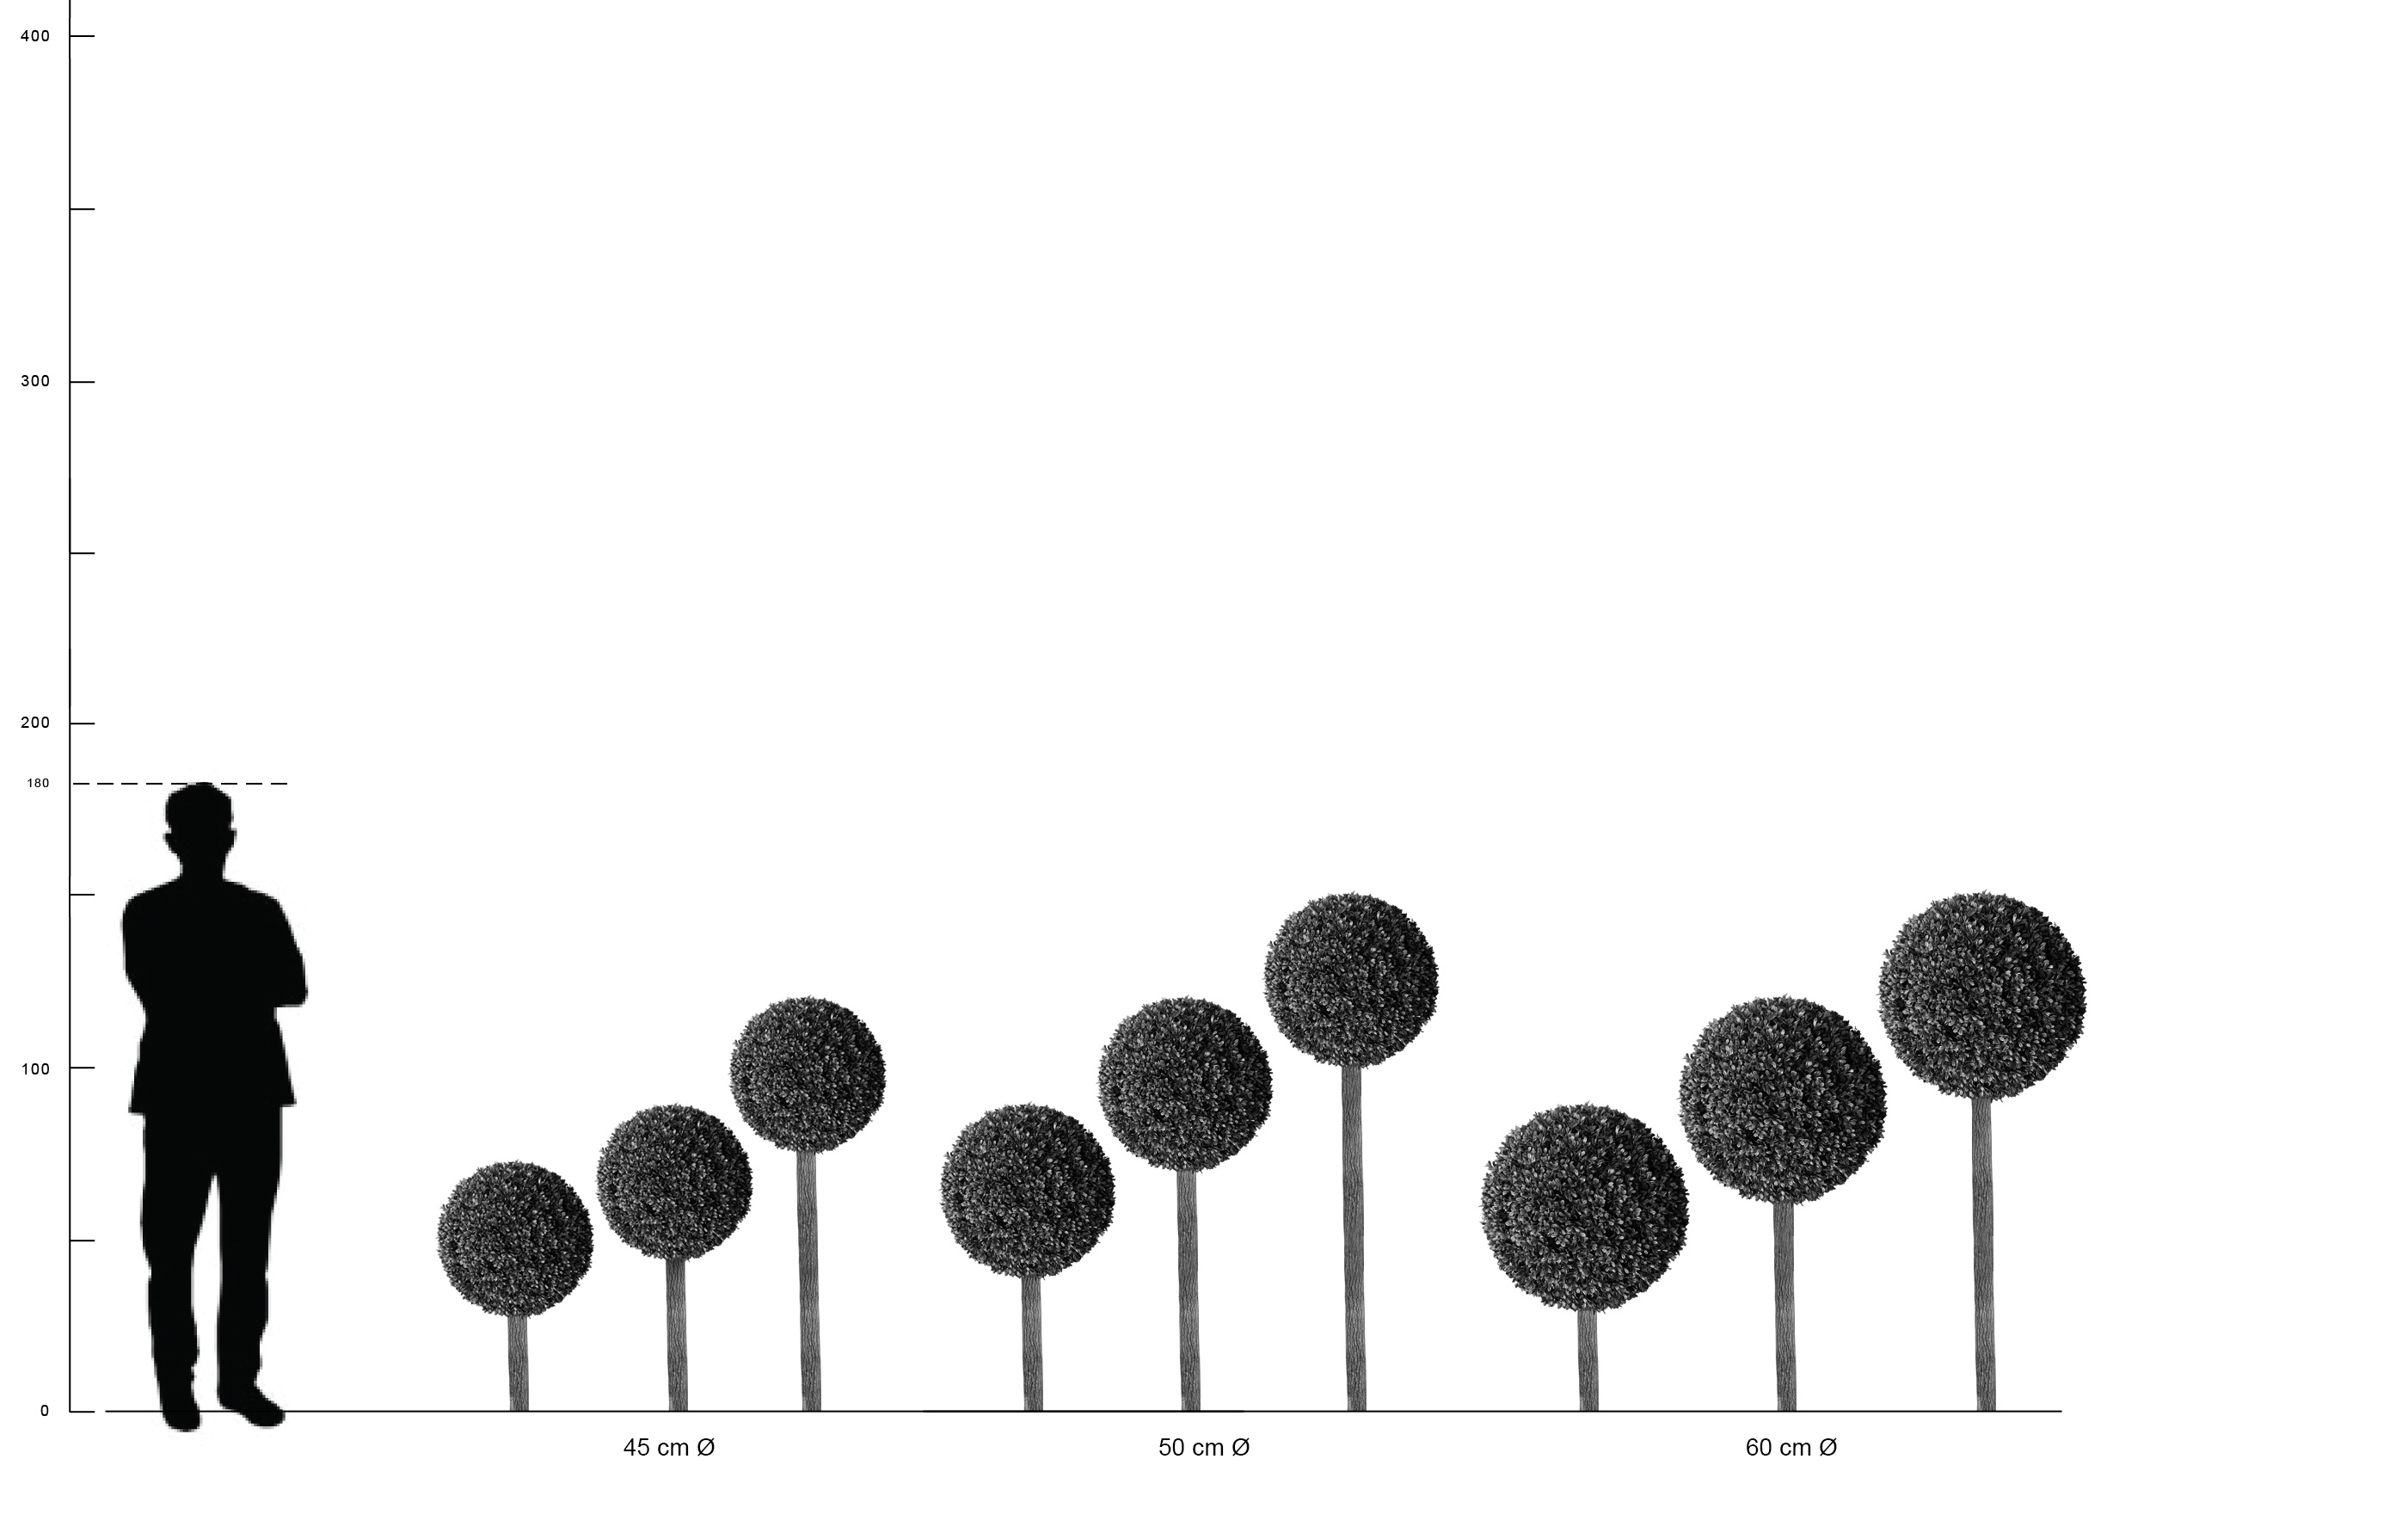 Buchsbaum Kugel 45 cm Durchmesser